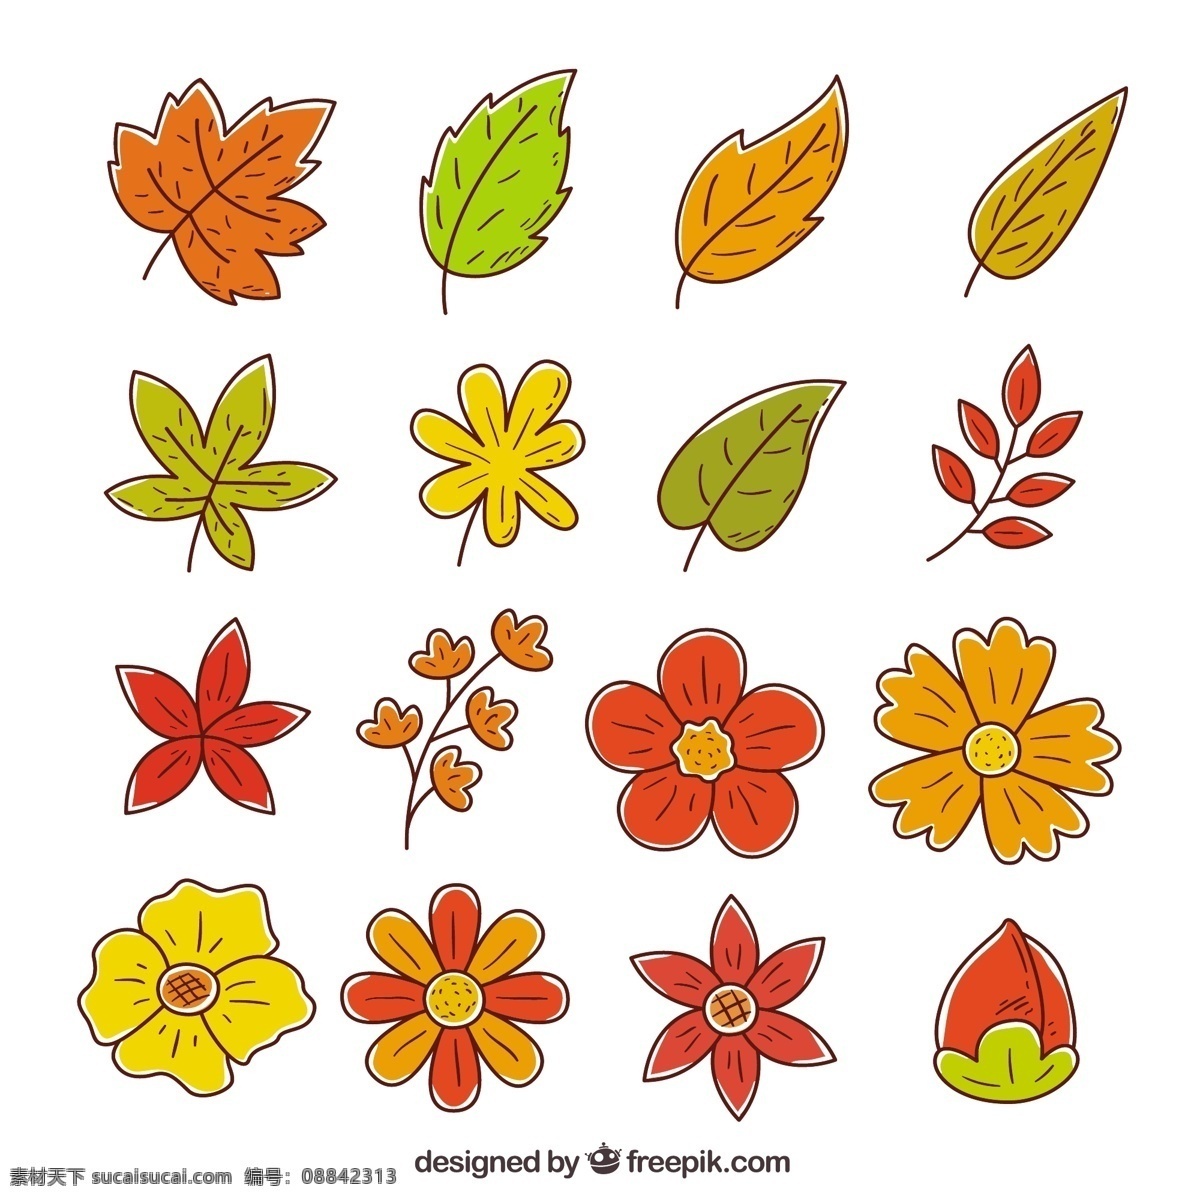 秋天 树叶 收集 手 叶 自然 手绘 涂鸦 素描 色彩 温暖 树枝 秋叶 季节 画 包装 粗略